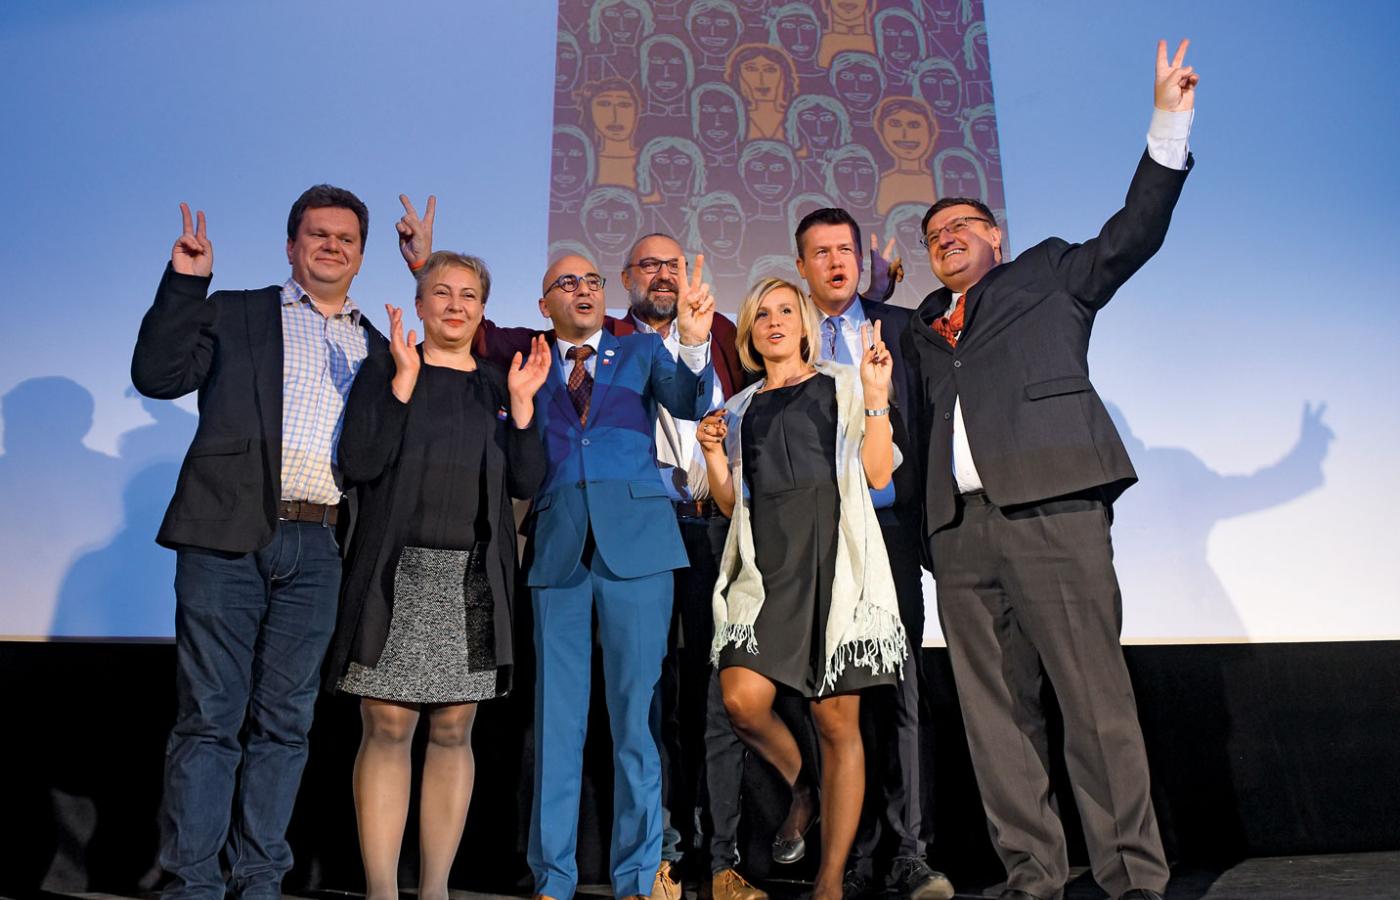 Przedstawiciele KOD odbierają Nagrodę Parlamentu Europejskiego. Od lewej: Piotr Chabora, Małgorzata Lech-Krawczyk, Radomir Szumełda, Mateusz Kijowski, Magdalena Filiks, Jarosław Marciniak, Krzysztof Król.